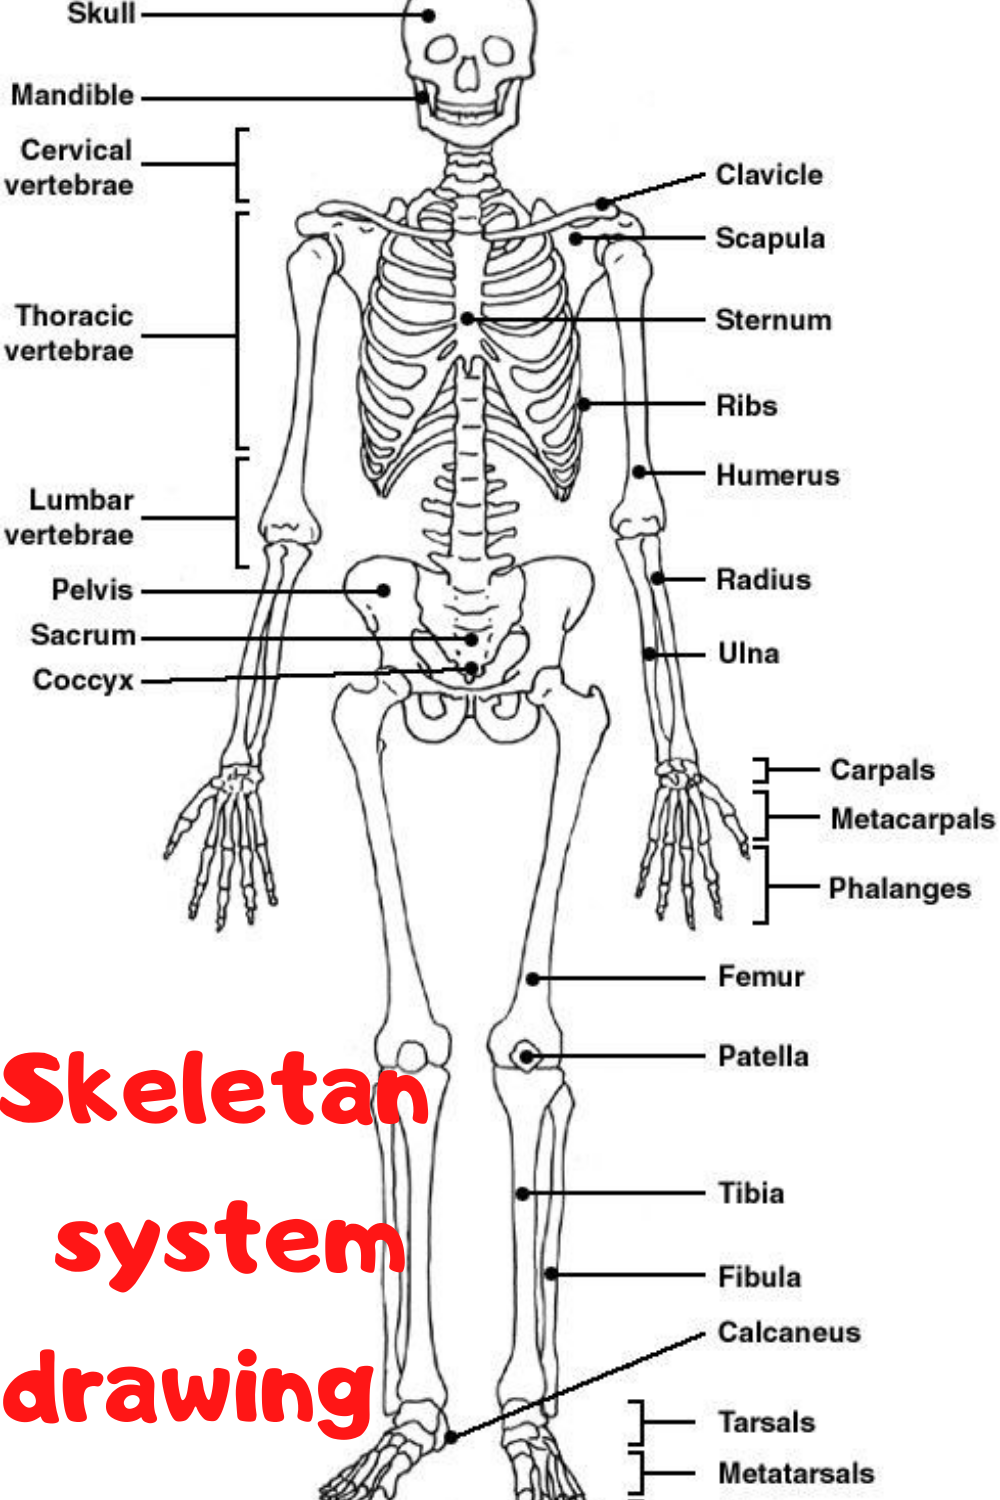 Skeletan System Drawing Human Skeletal System Skeletal System 